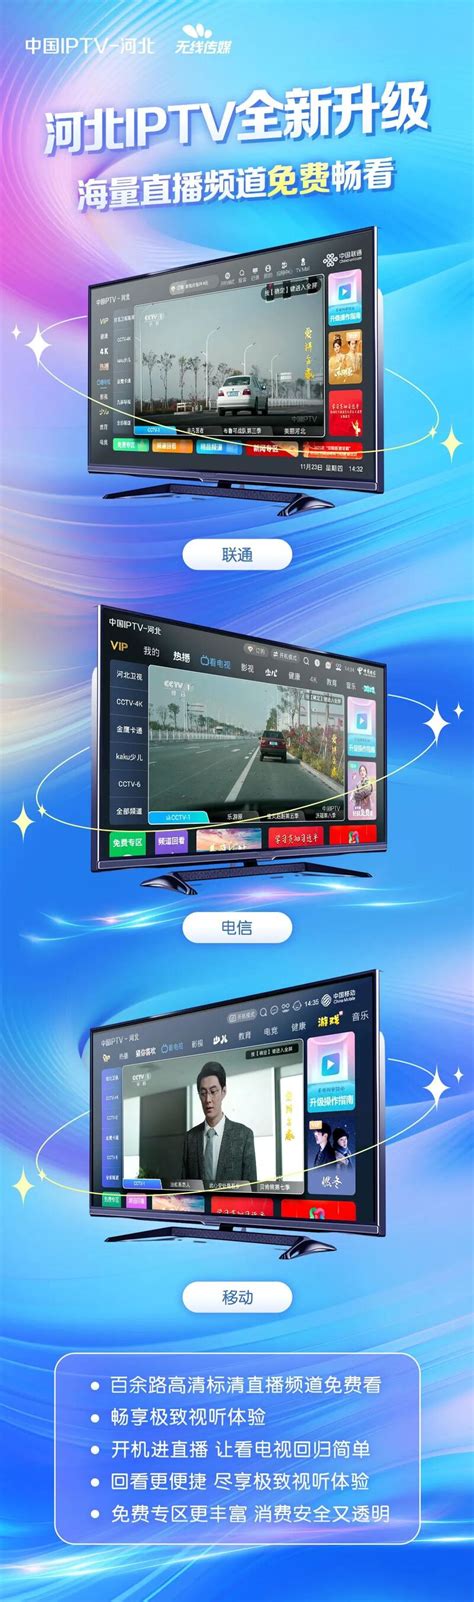 整改进展|陕西IPTV全面实现电视“开机进直播”升级 | 流媒体网